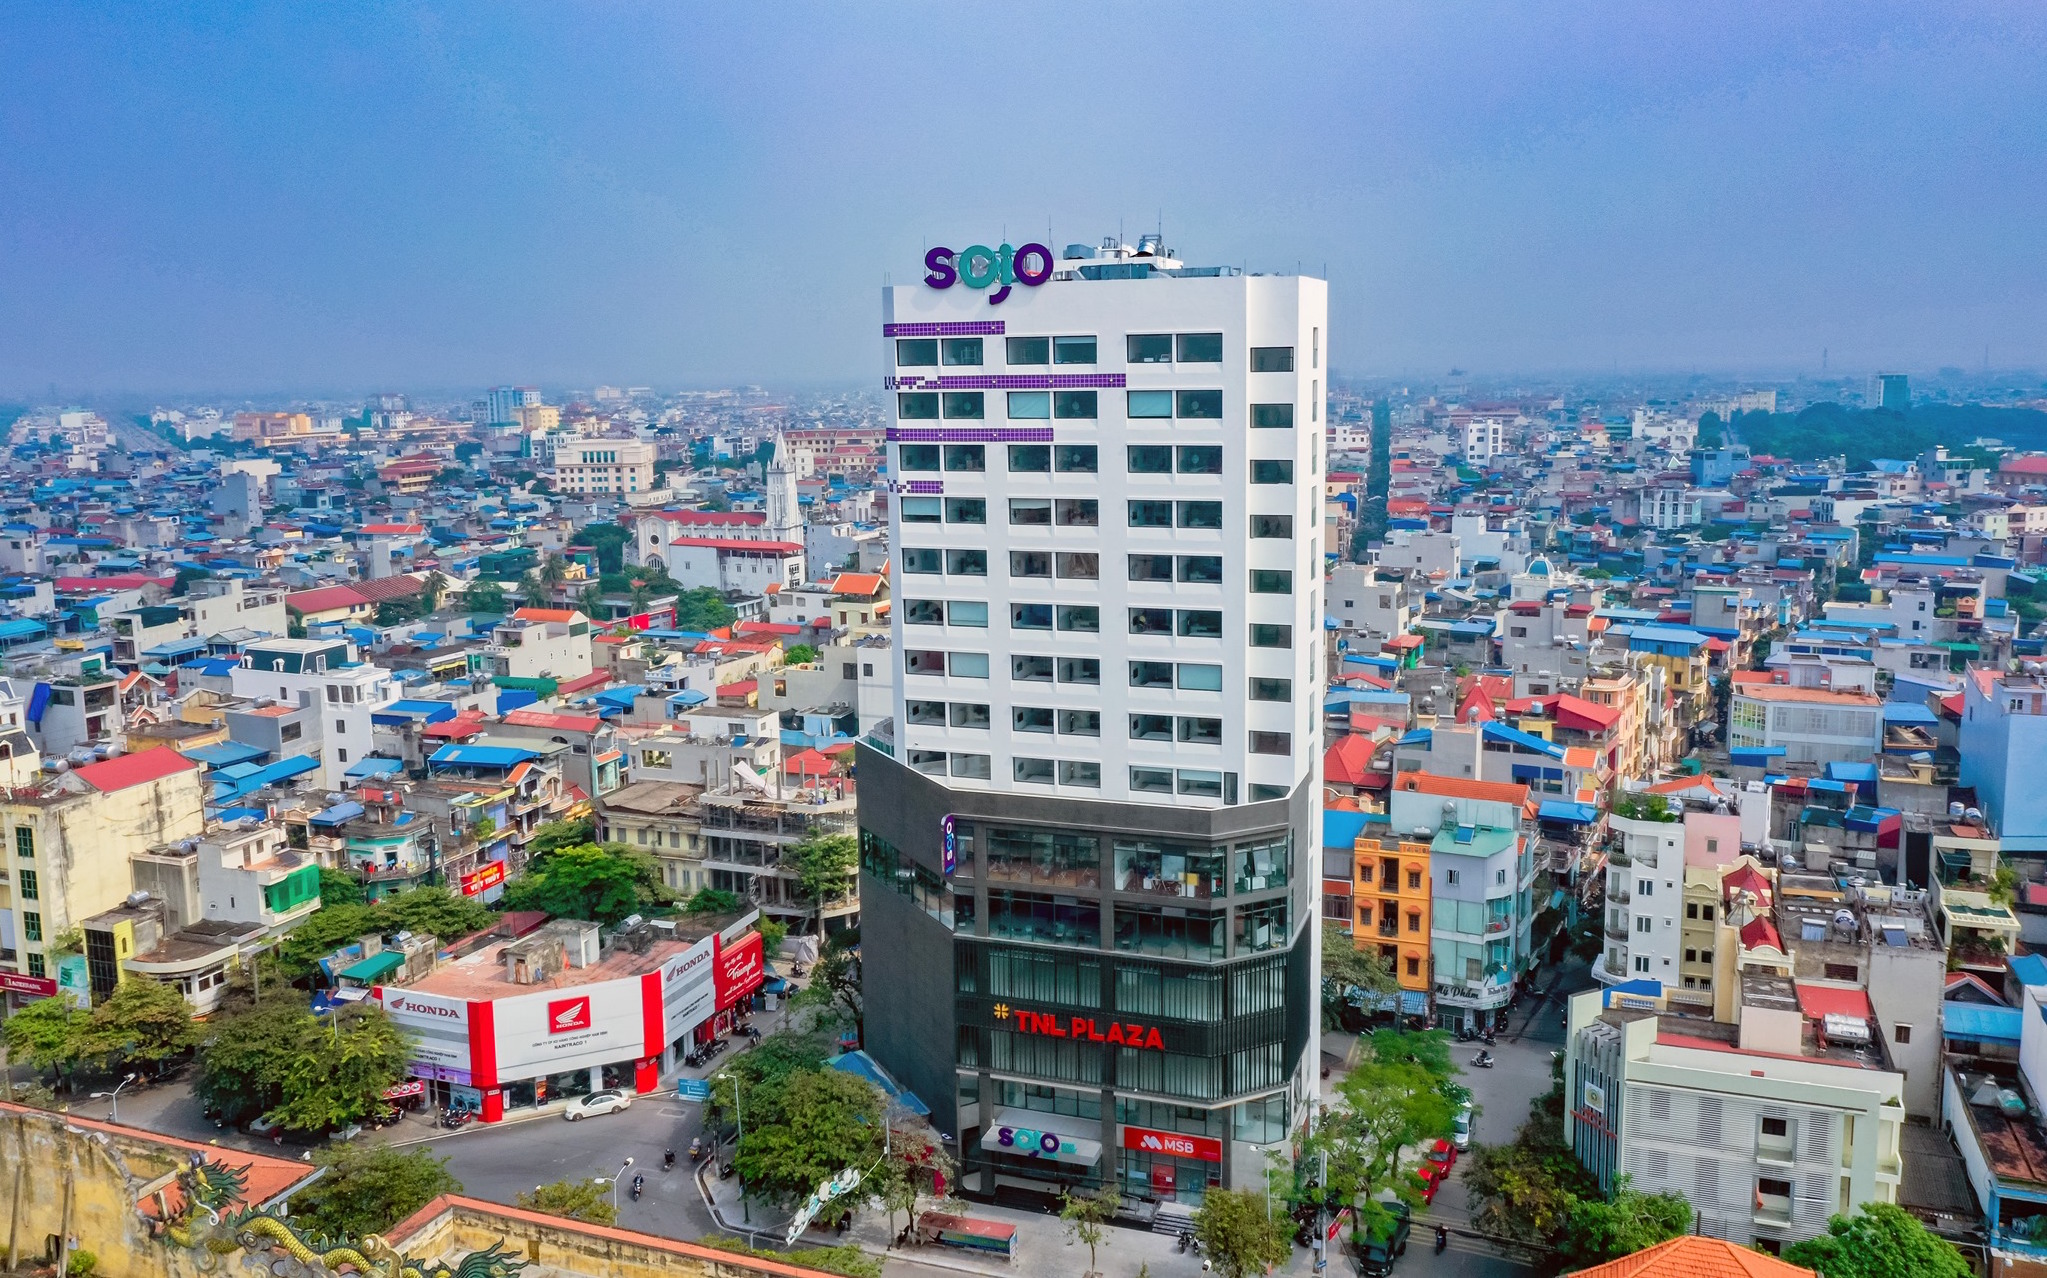 ổ hợp khách sạn –  thương mại – văn phòng TNL Plaza Nam Định,